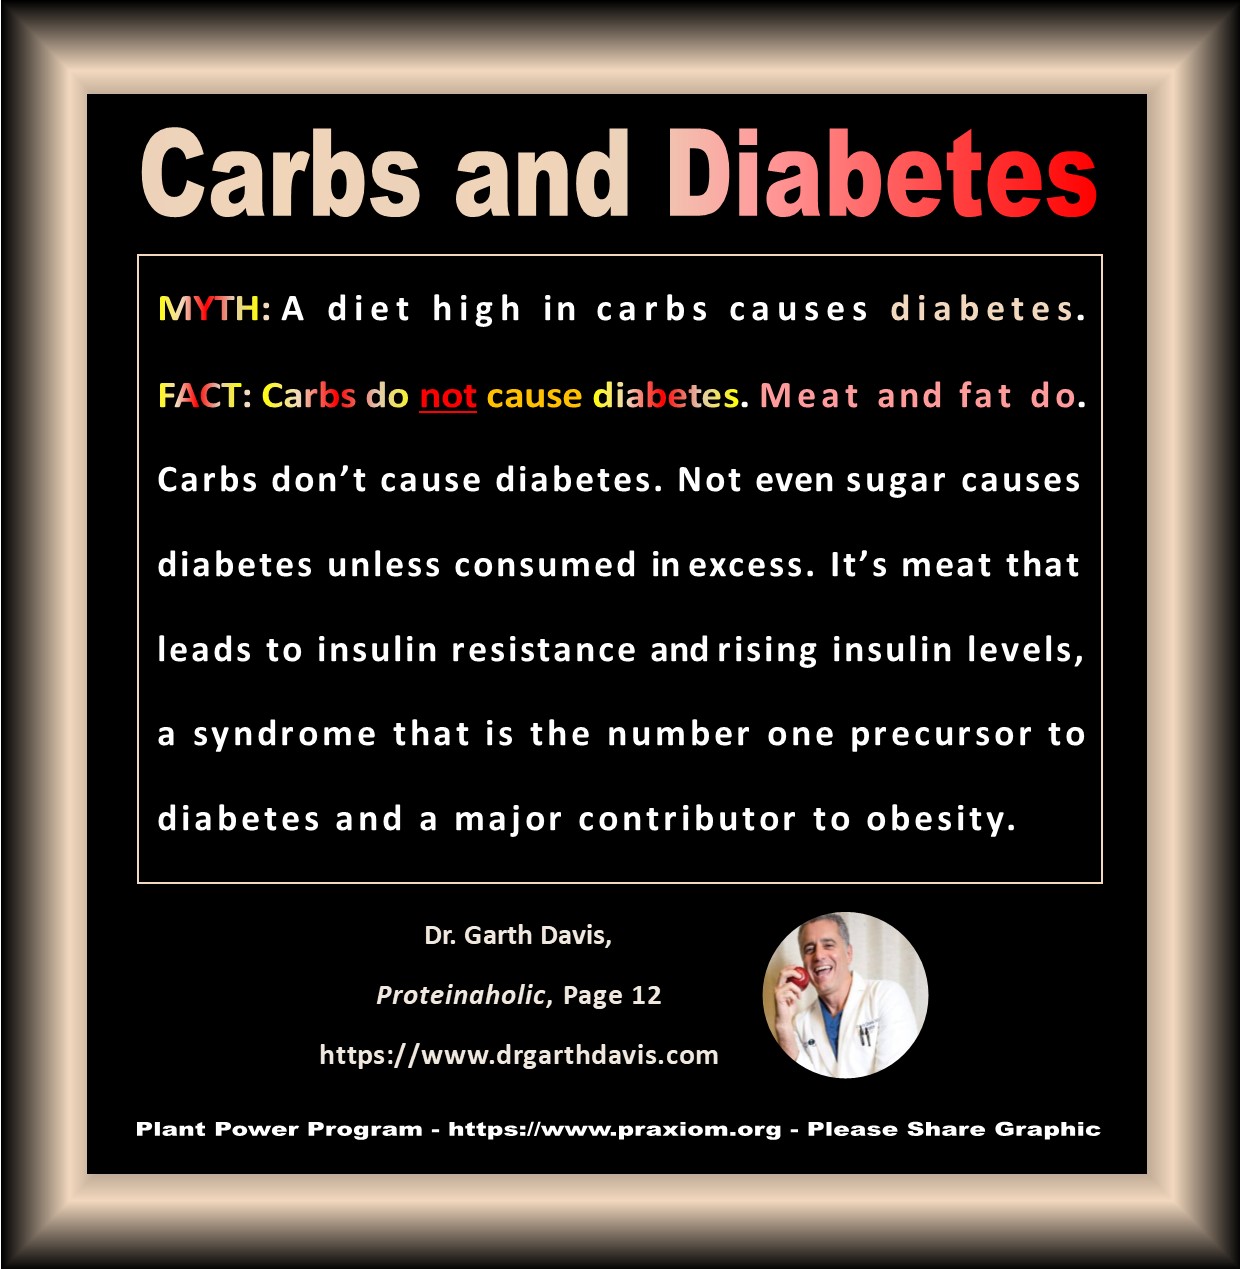 Carbs and Diabetes - Dr. Garth Davis